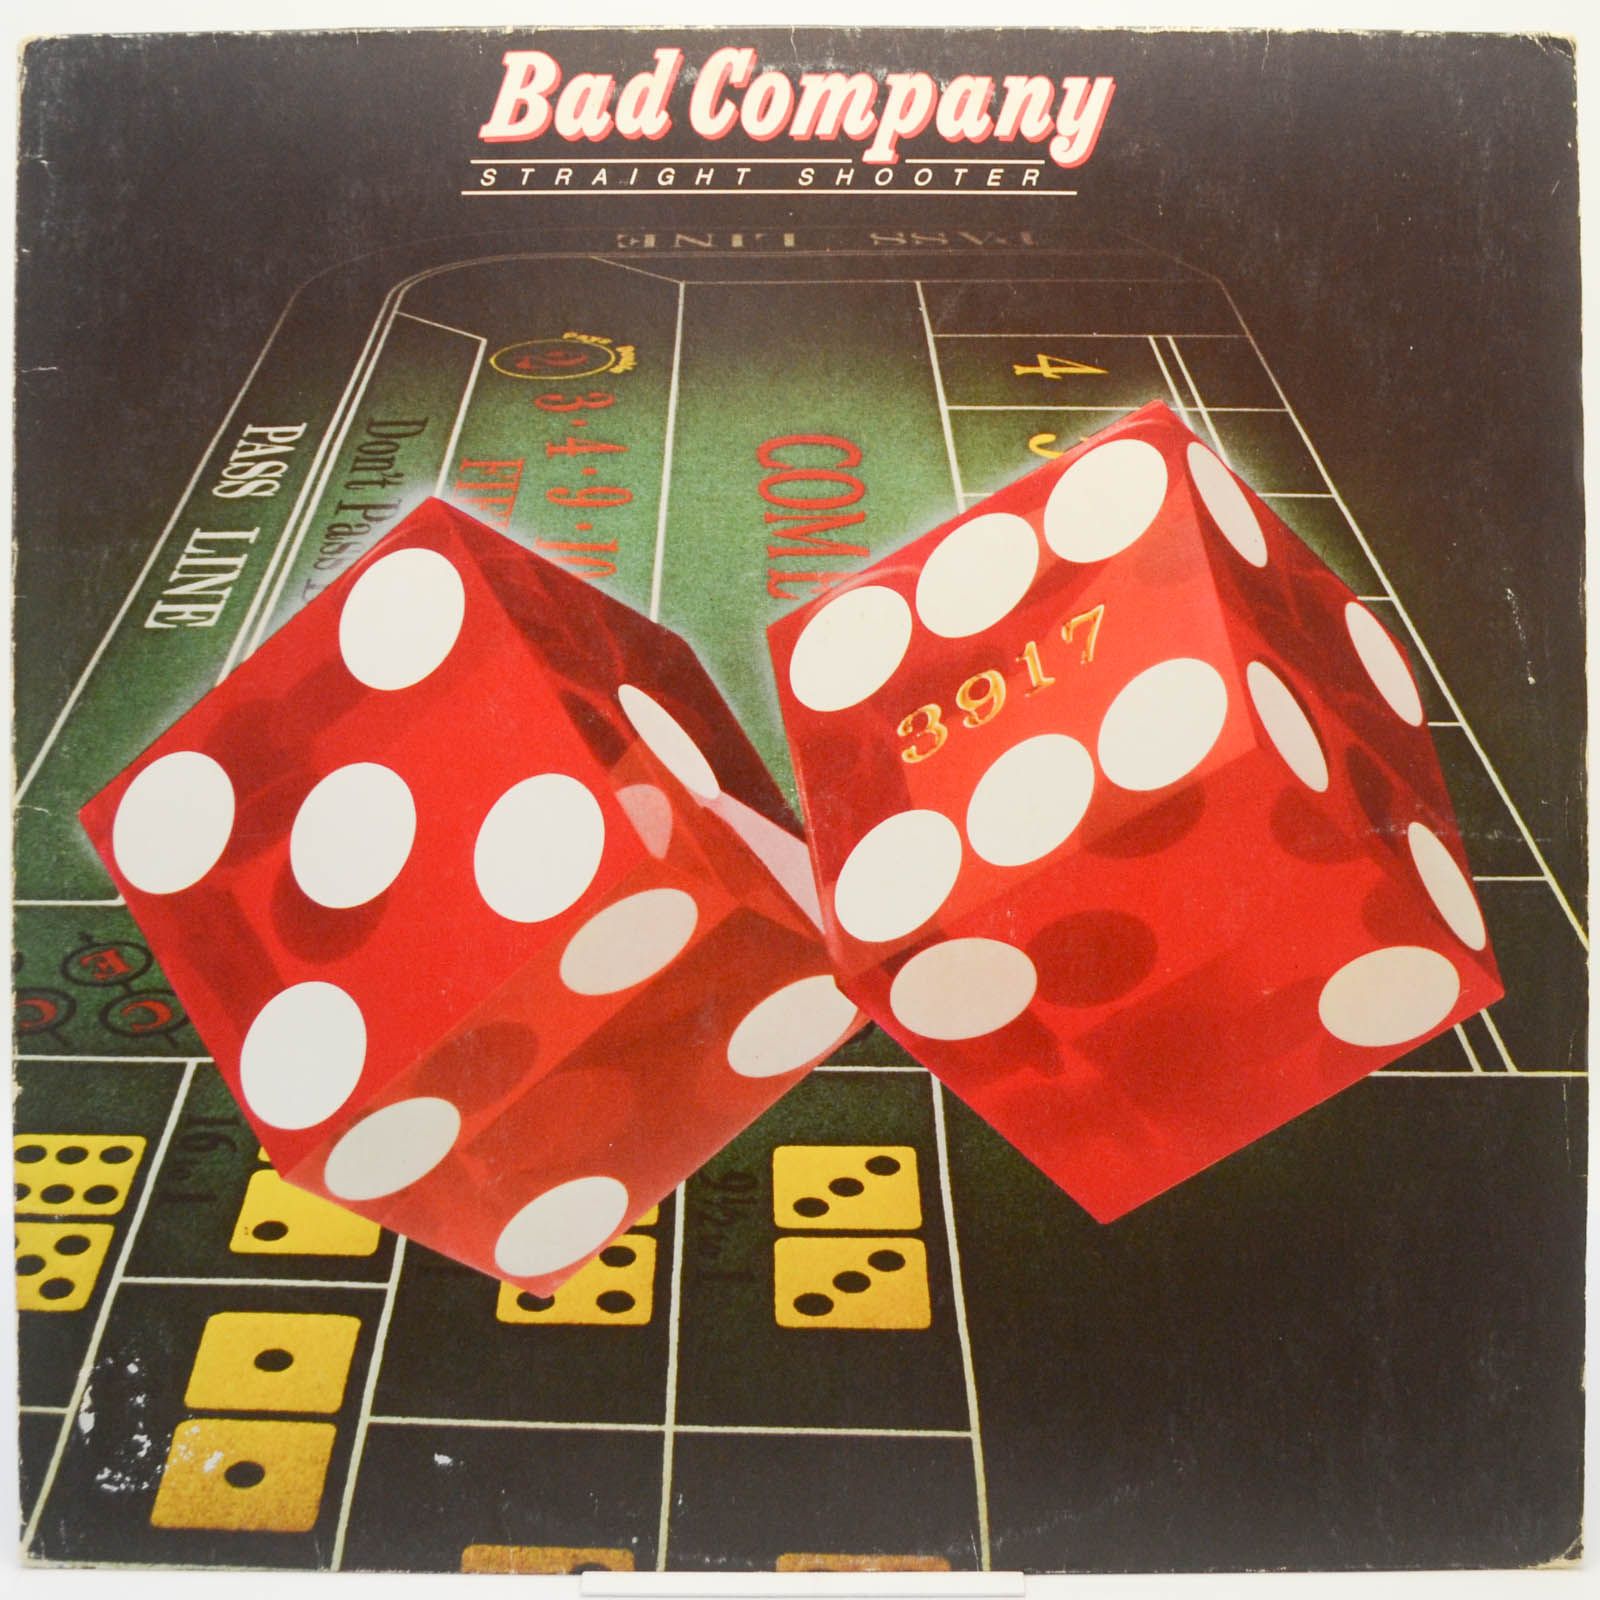 Bad Company — Straight Shooter, 1975